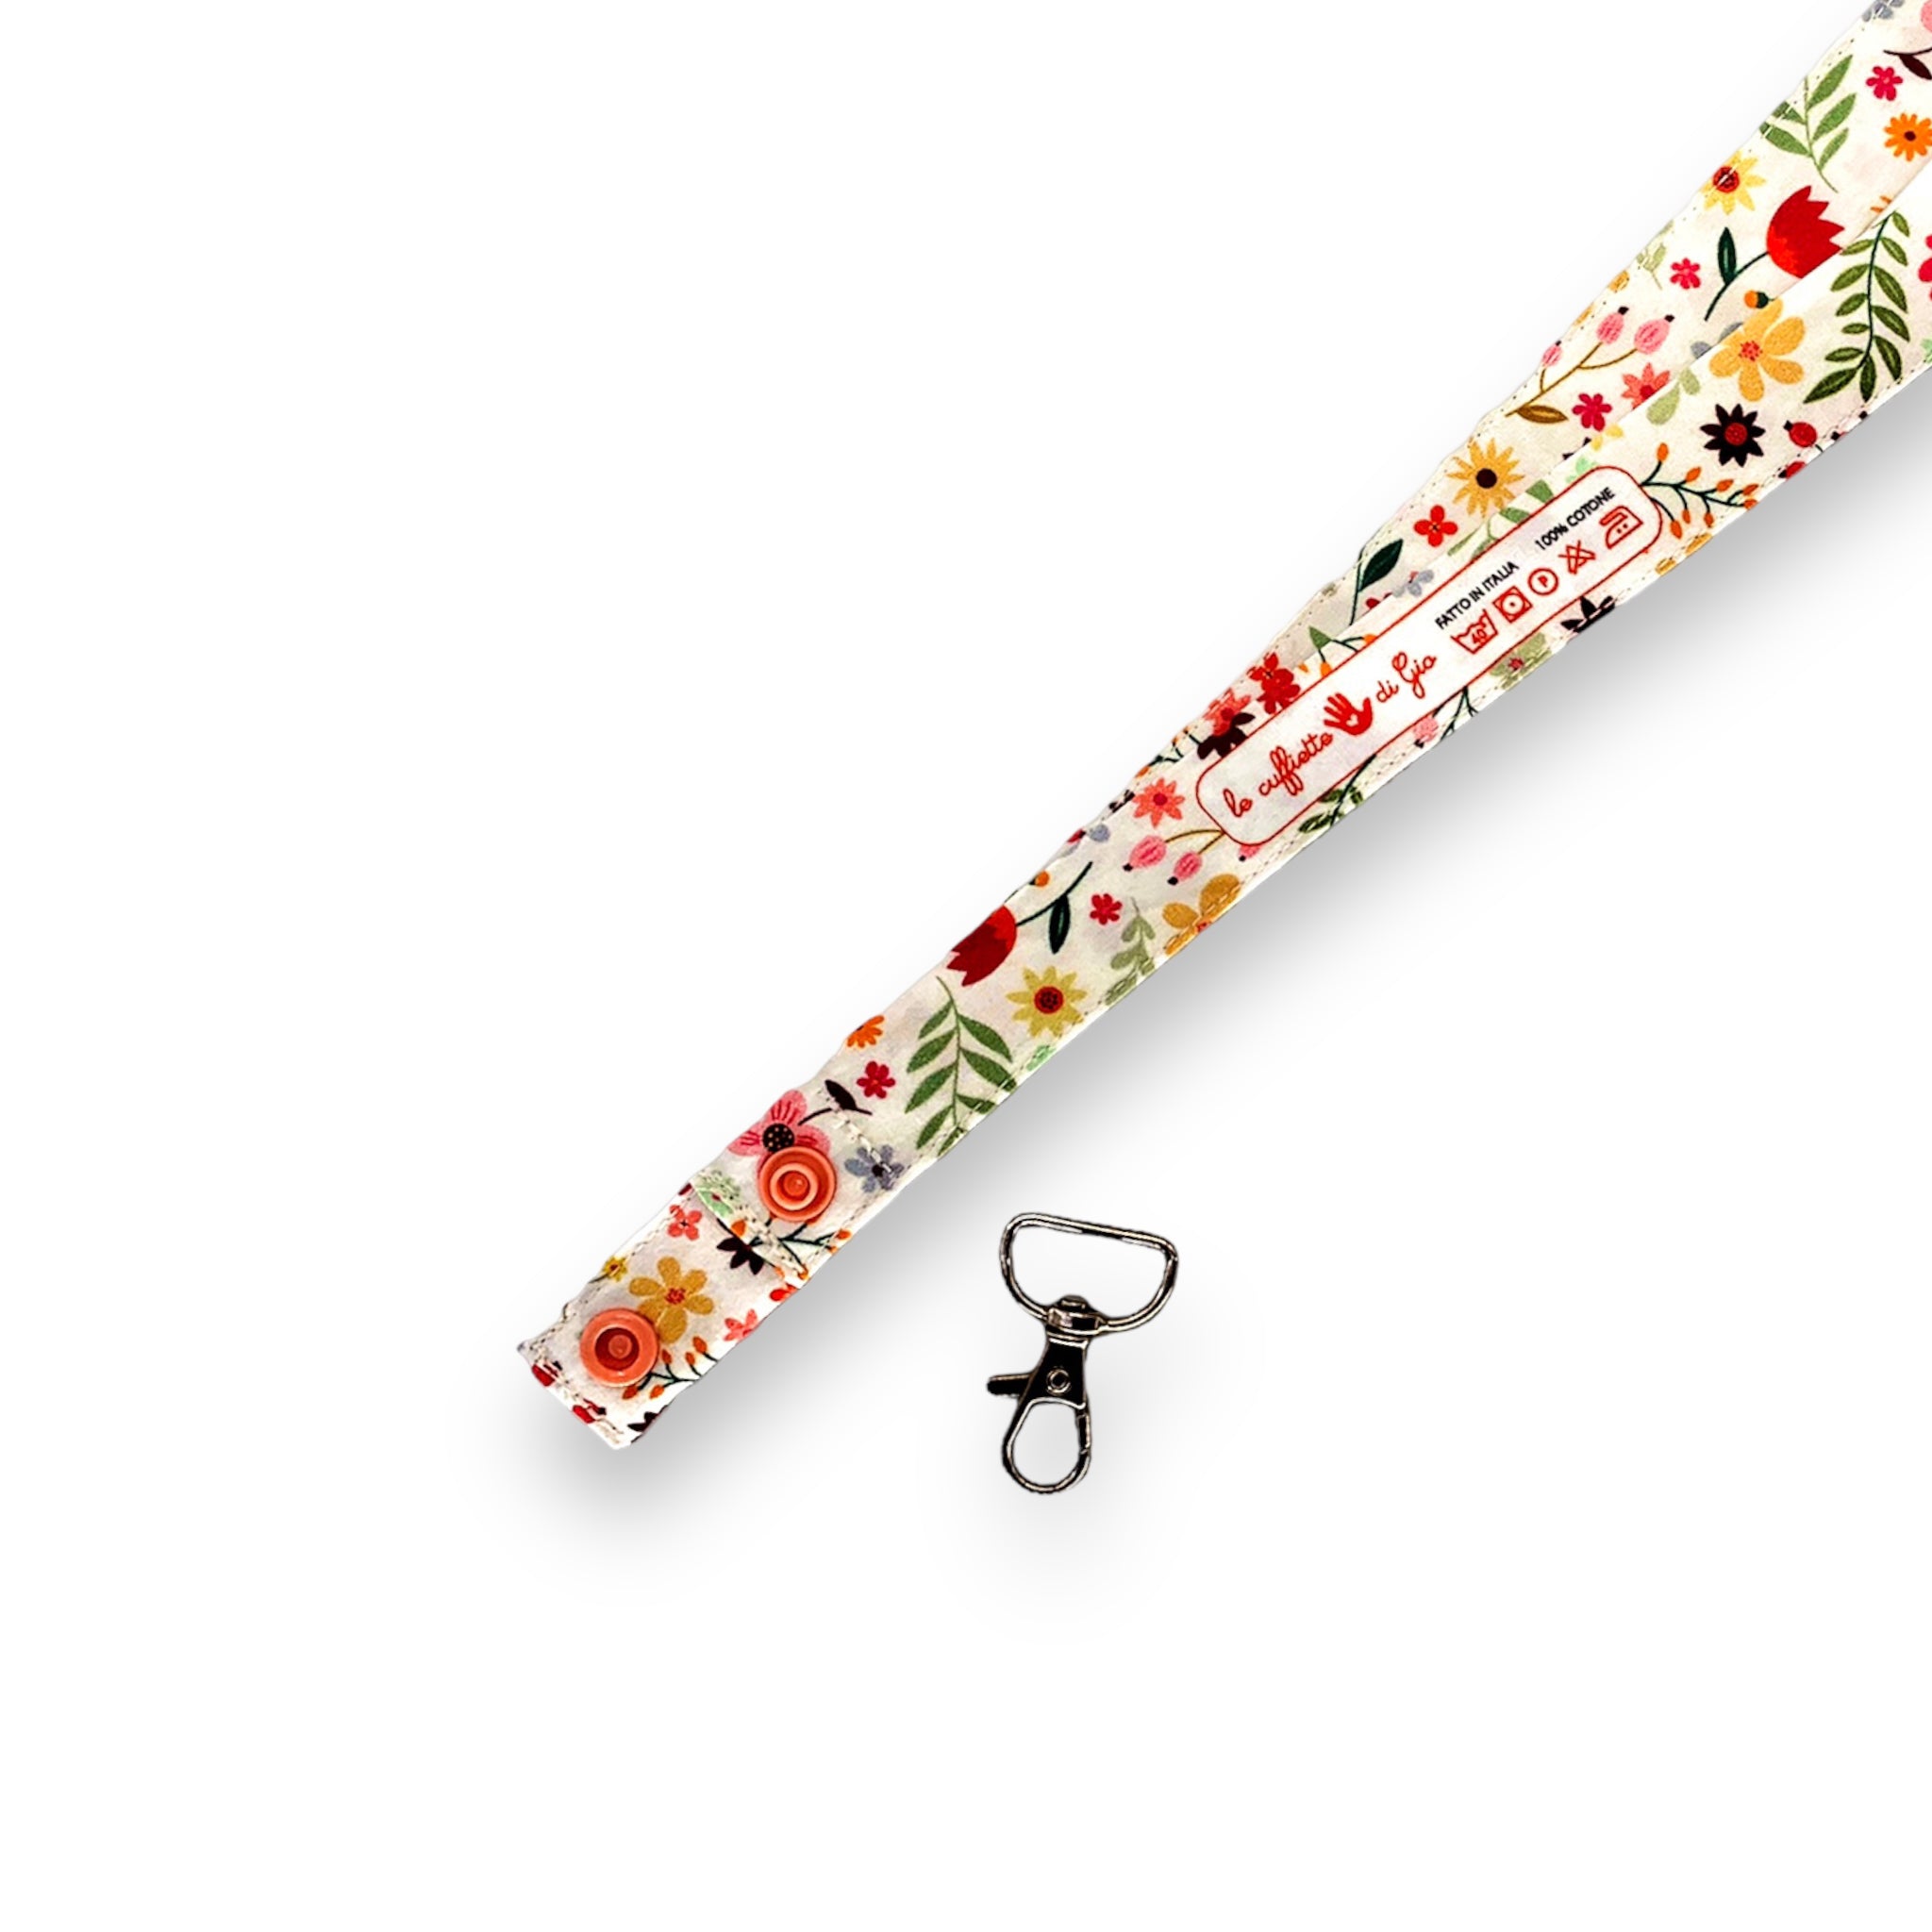 Una fascetta in cotone lunga 45 cm con fantasia floreale, dettaglio del moschettone separabile